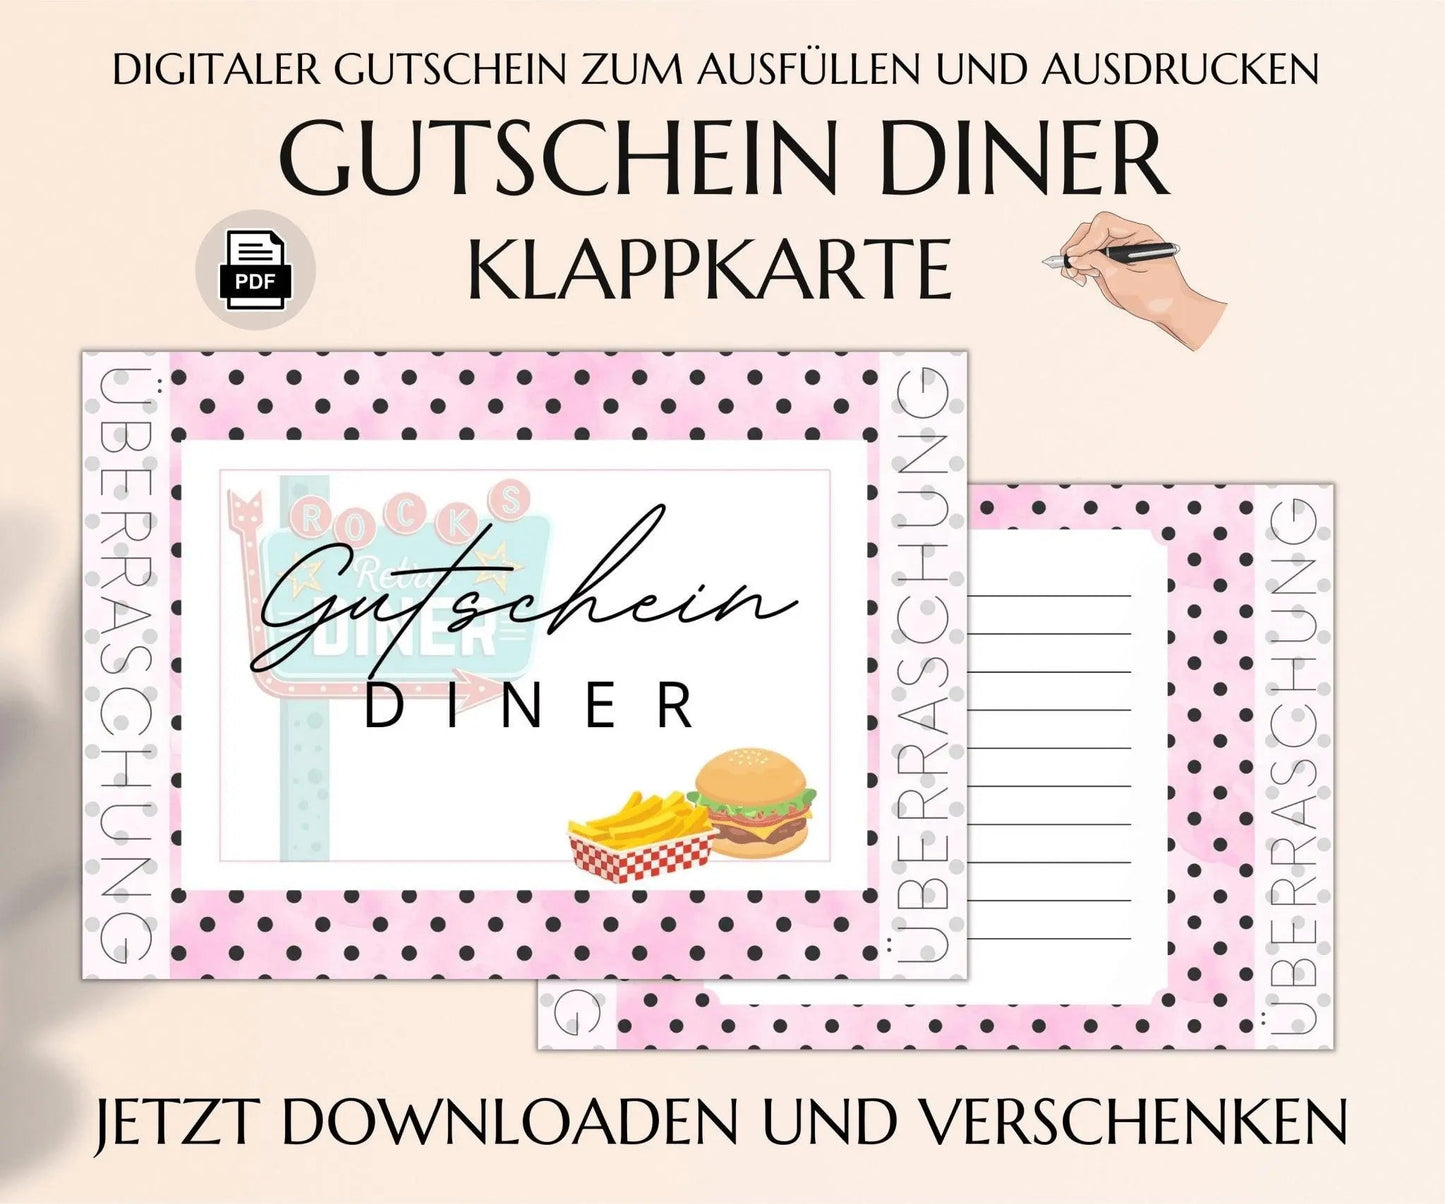 50s American Diner Gutschein Vorlage - JSKDesignStudio.de